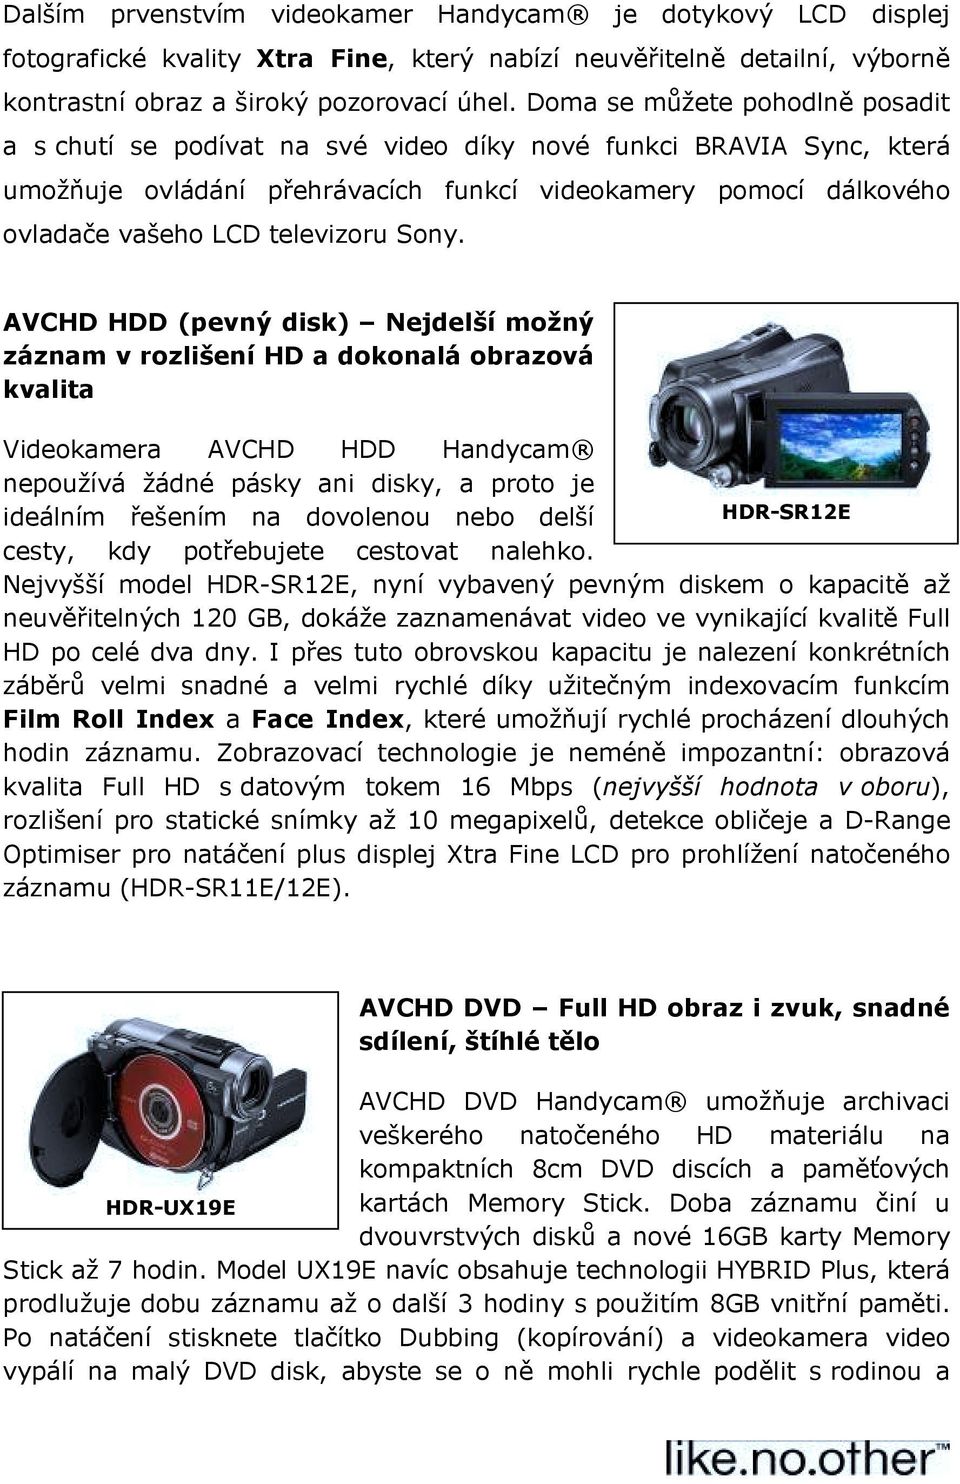 Sony. AVCHD HDD (pevný disk) Nejdelší možný záznam v rozlišení HD a dokonalá obrazová kvalita Videokamera AVCHD HDD Handycam nepoužívá žádné pásky ani disky, a proto je ideálním řešením na dovolenou